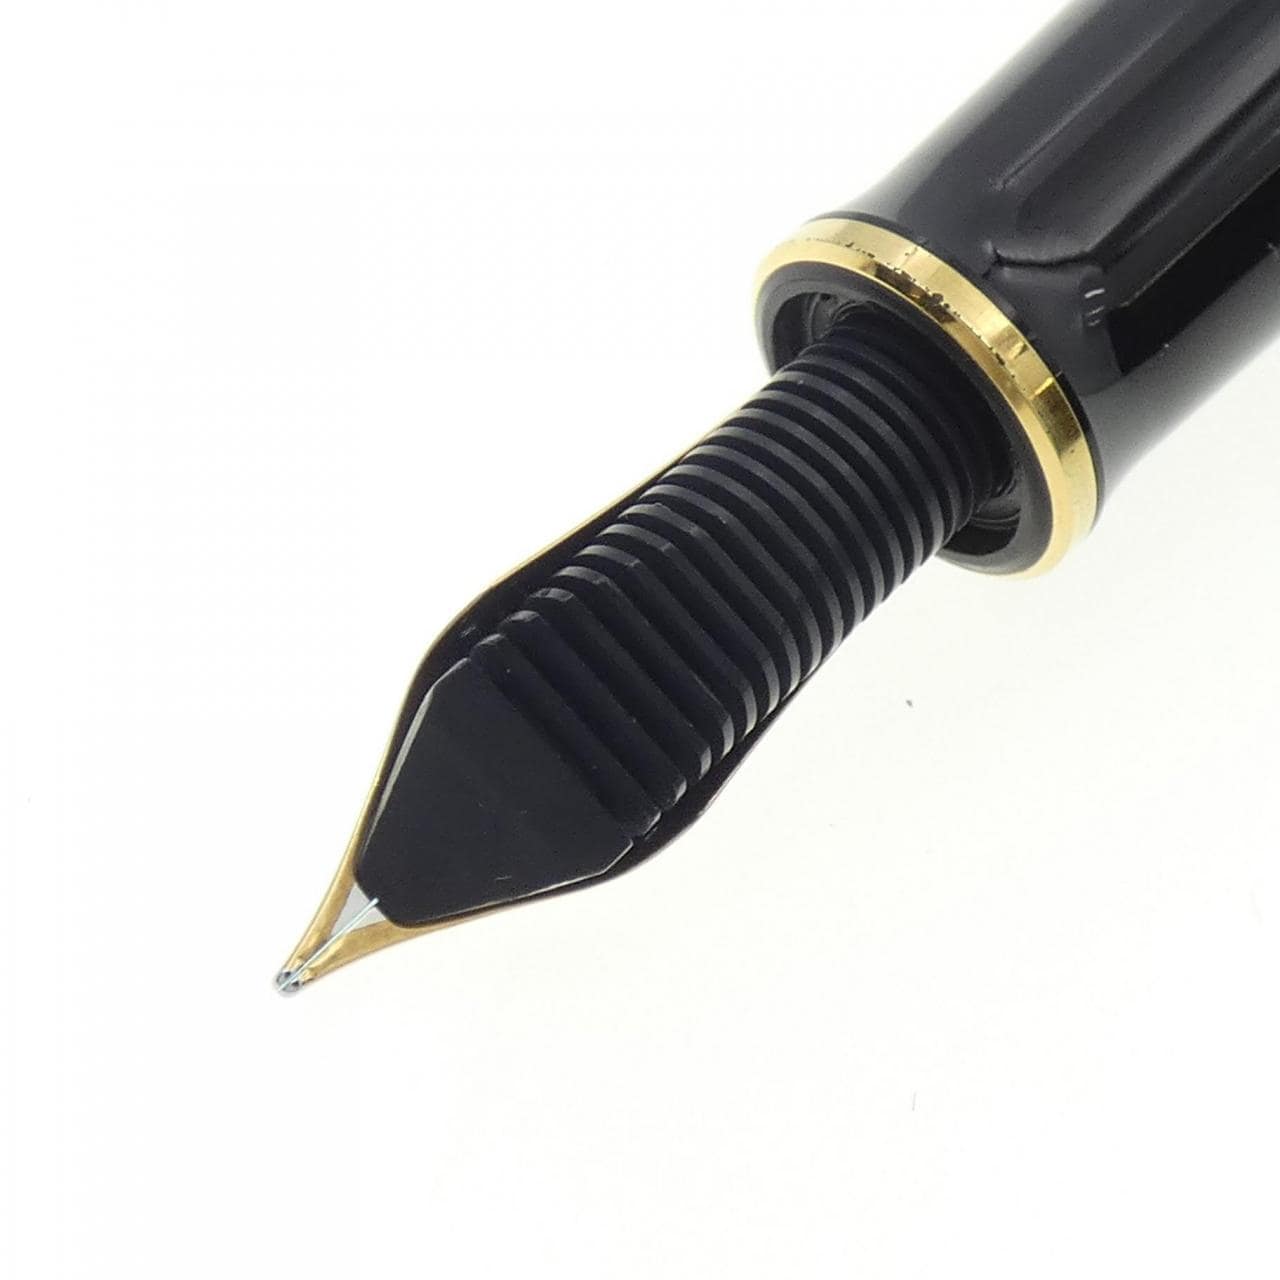 鹈鹕天鹅绒800黑色 (EN刻字) 钢笔